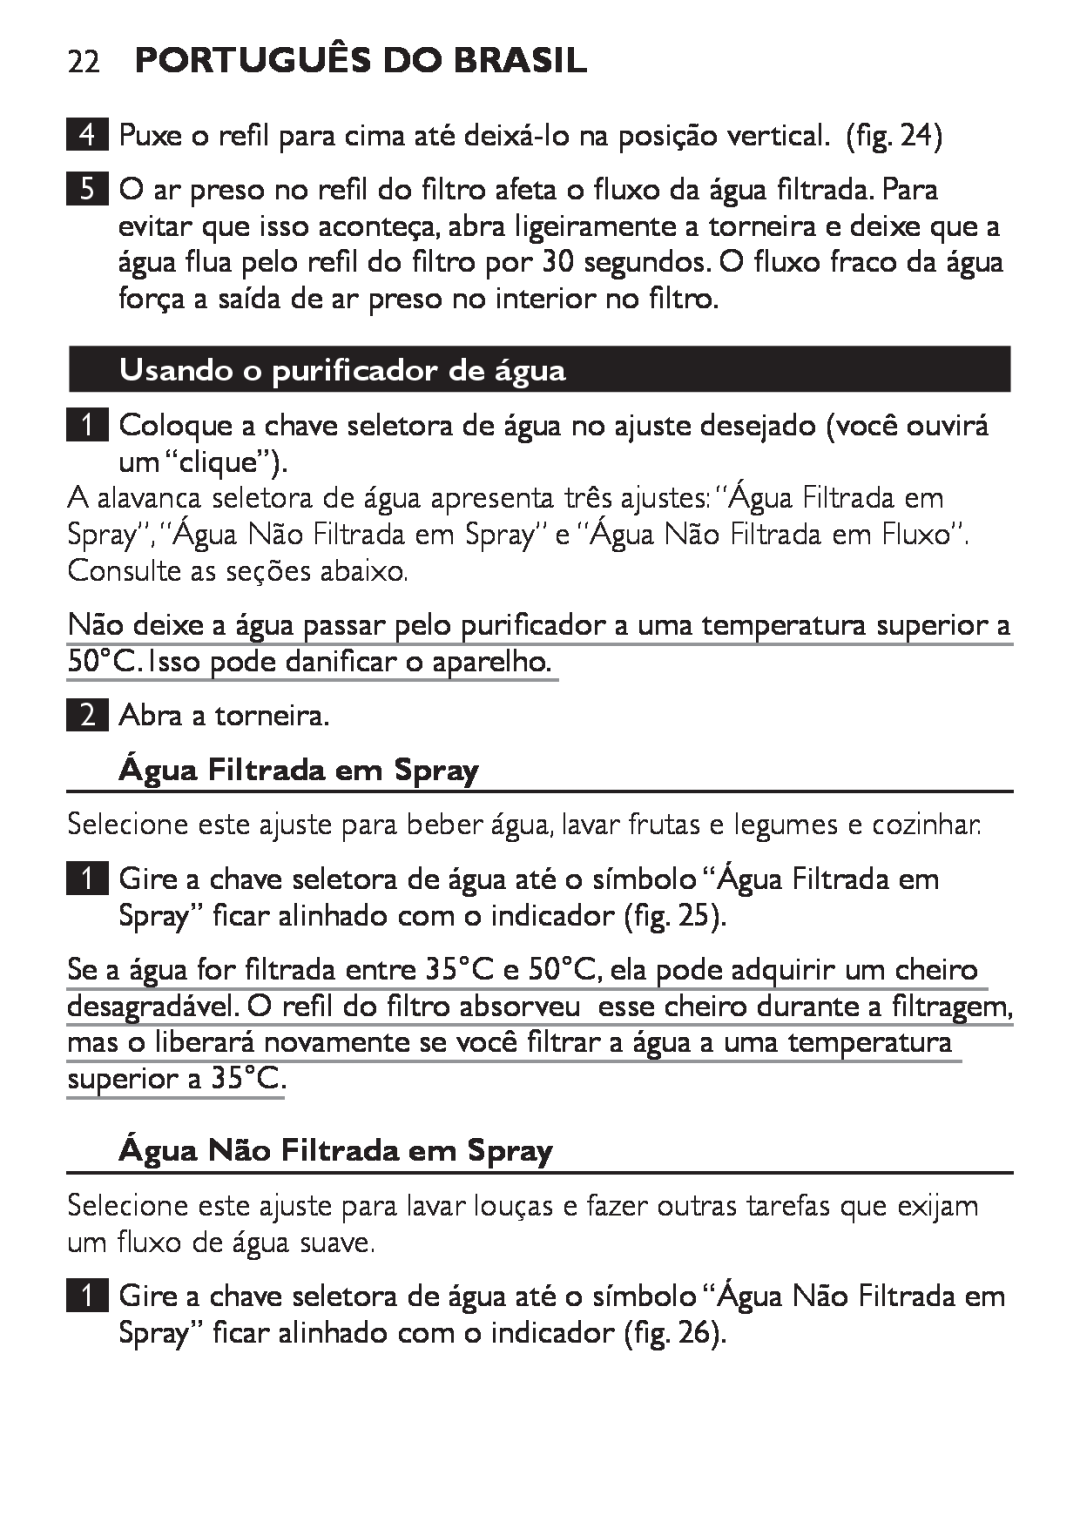 Philips WP3810 manual Português do Brasil, Usando o purificador de água, Água Filtrada em Spray, Água Não Filtrada em Spray 